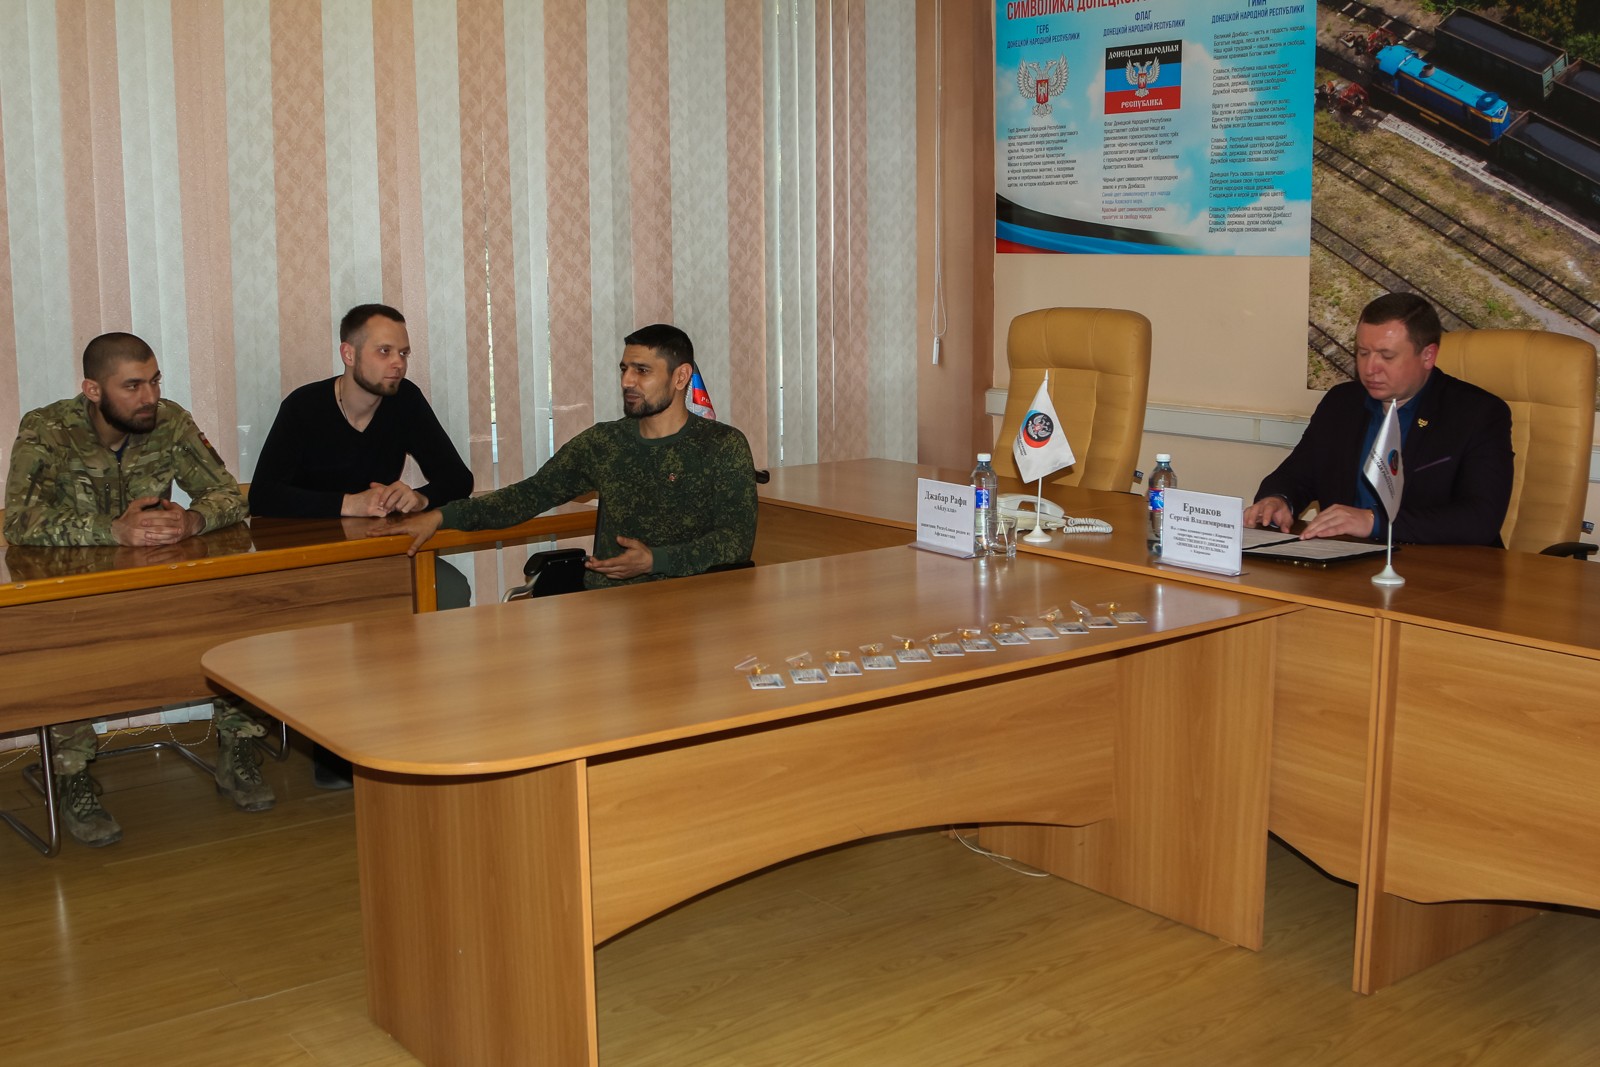 Торжественное вручение членских билетов ОД «ДР» сотрудникам ГП «Шахта Комсомолец Донбасса»